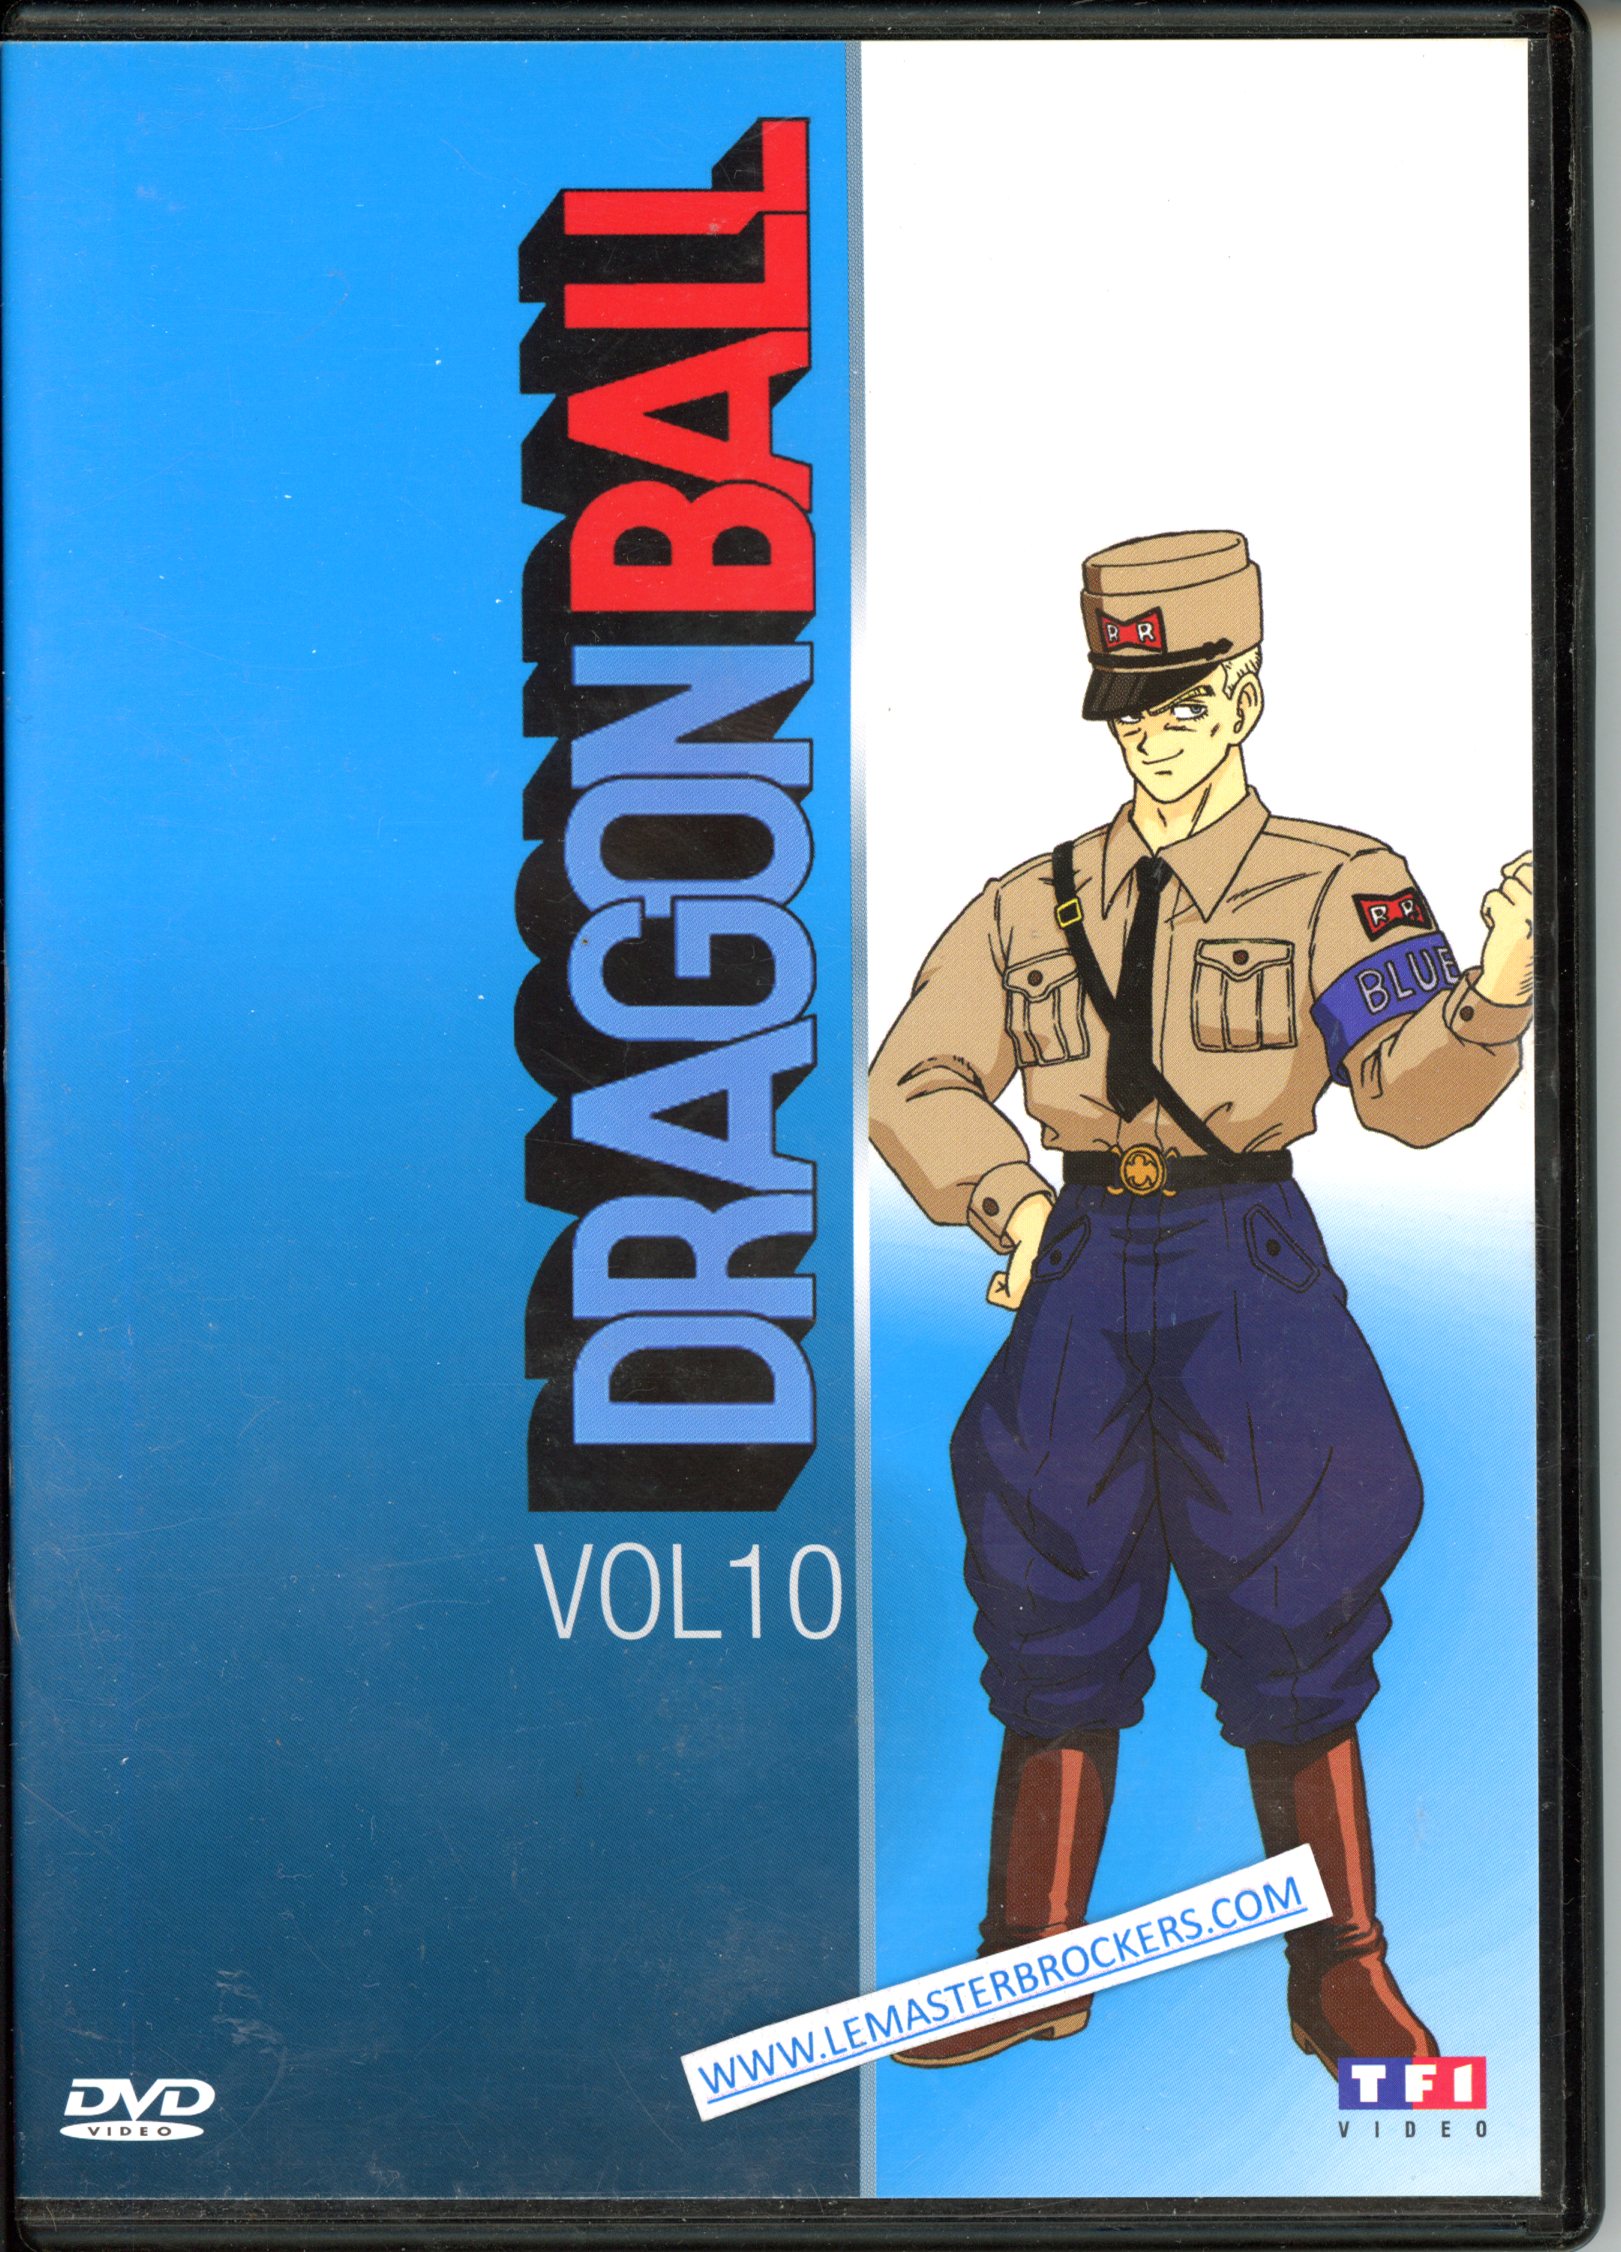 DRAGON BALL DVD VOL 10